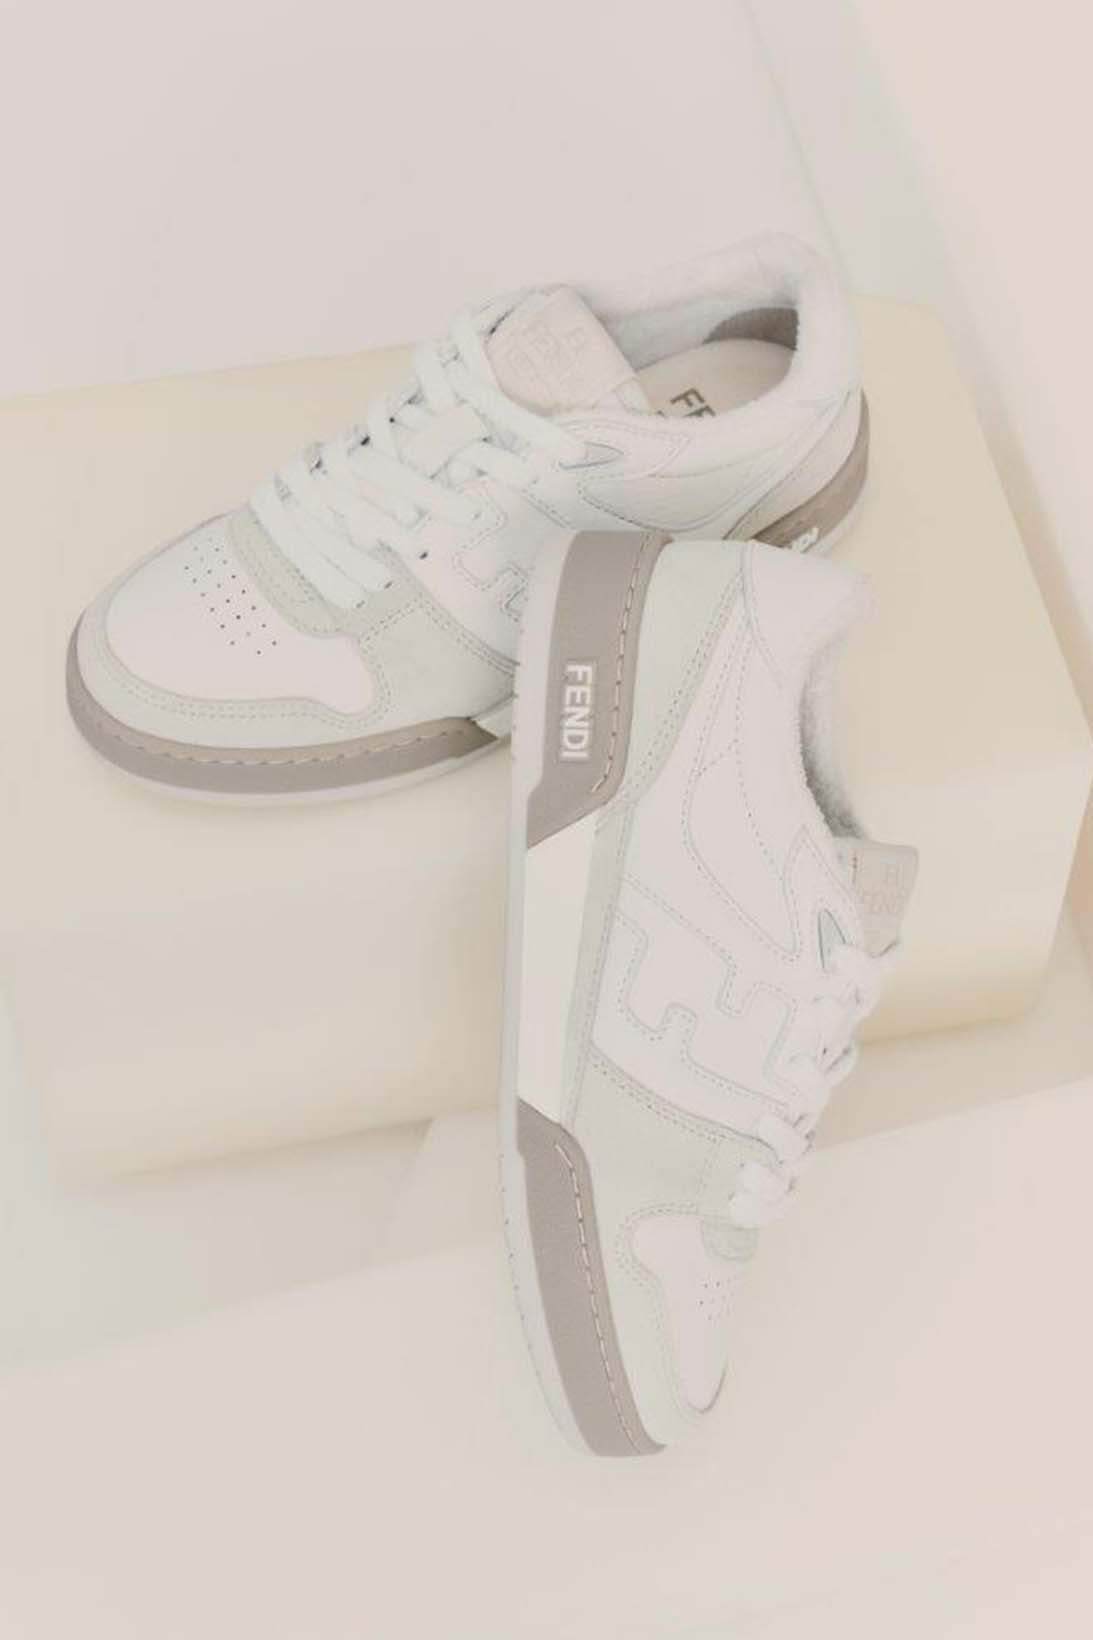 Fendi Match Sneaker Unisex Gray White Price Release Date